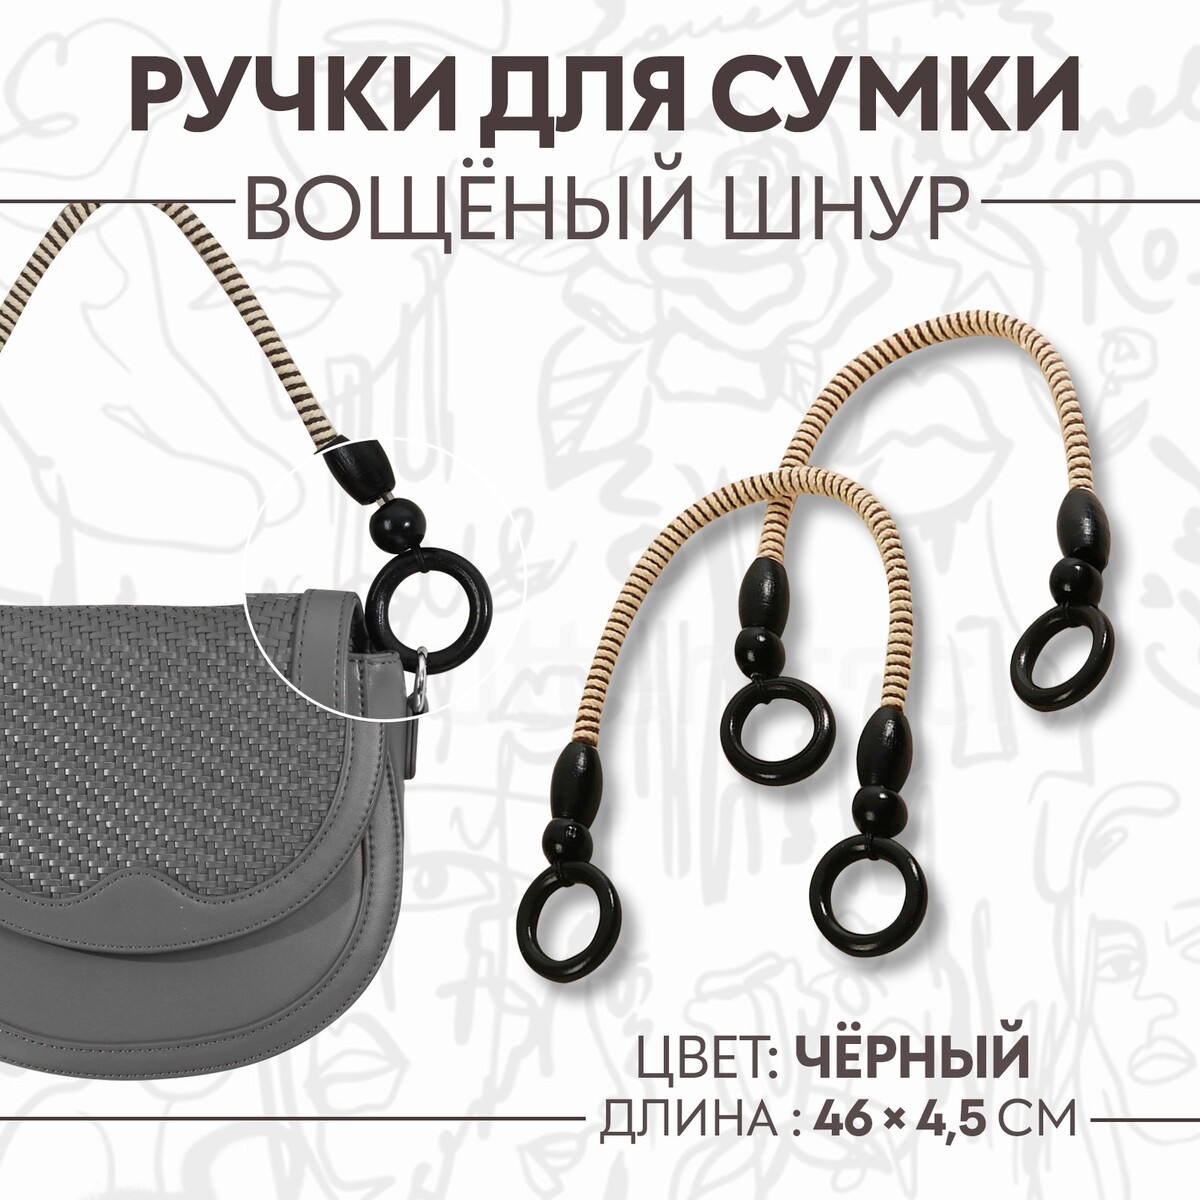 Ручки для сумки, 2 шт, вощеный шнур, 46 ± 1 × 4,5 см, цвет черный